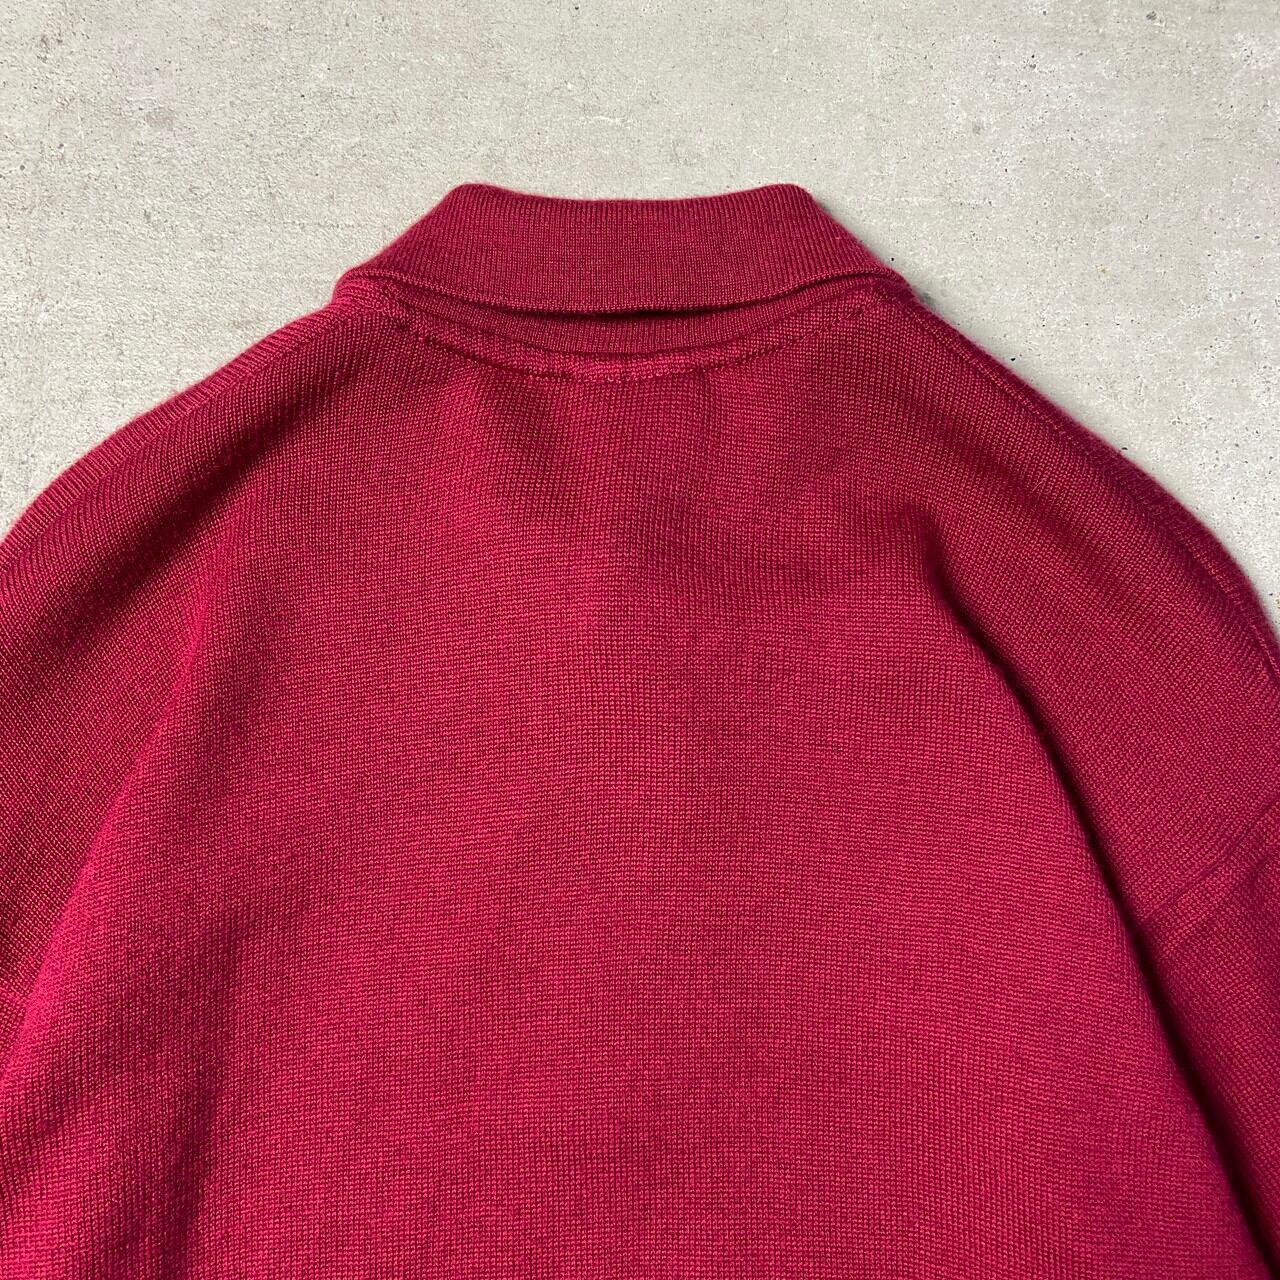 90’s カルロ メンズ ニット セーター L寸 ウール100% ピンク美品